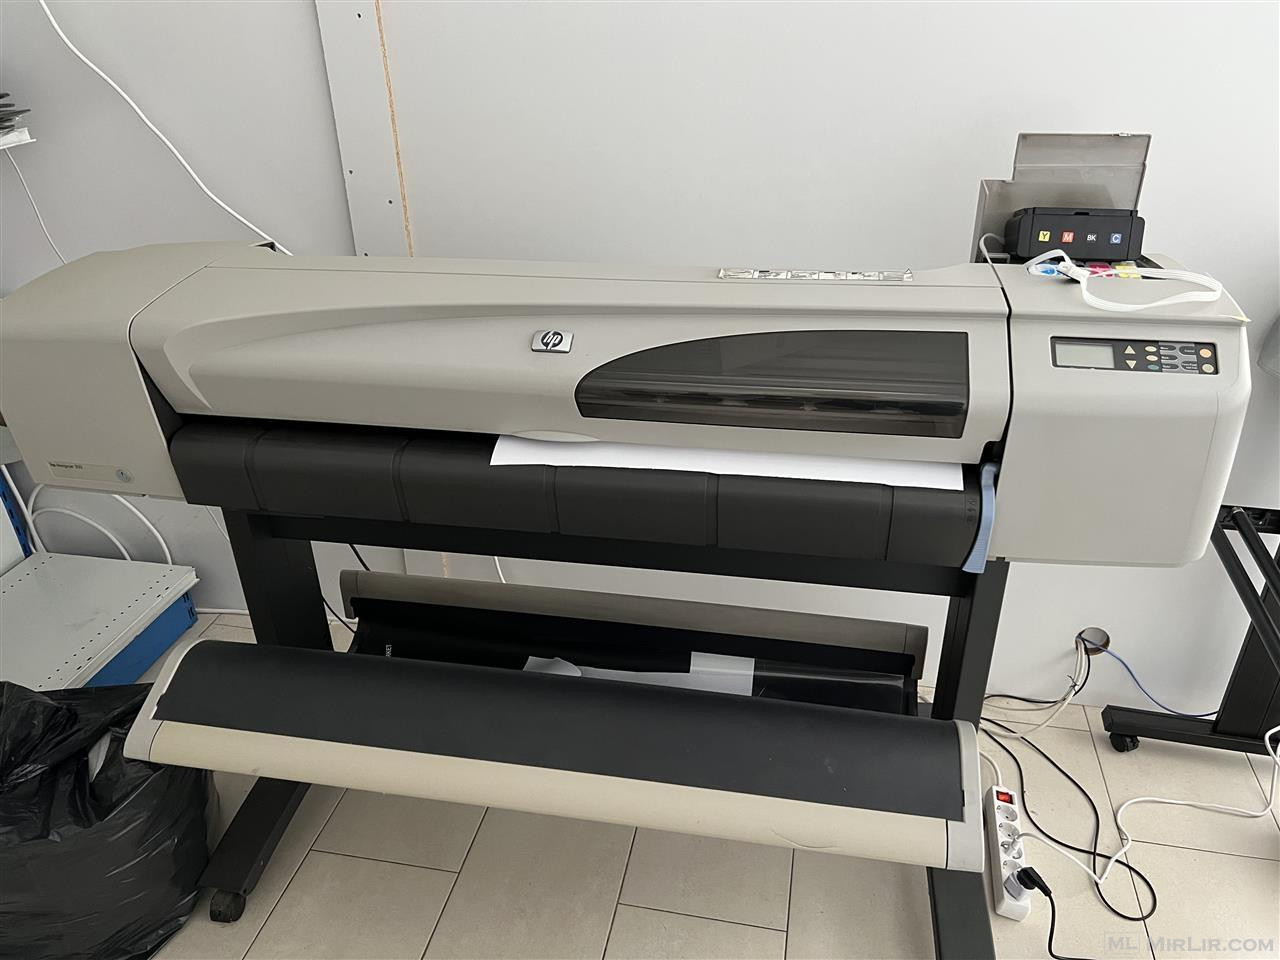 Printer ploter